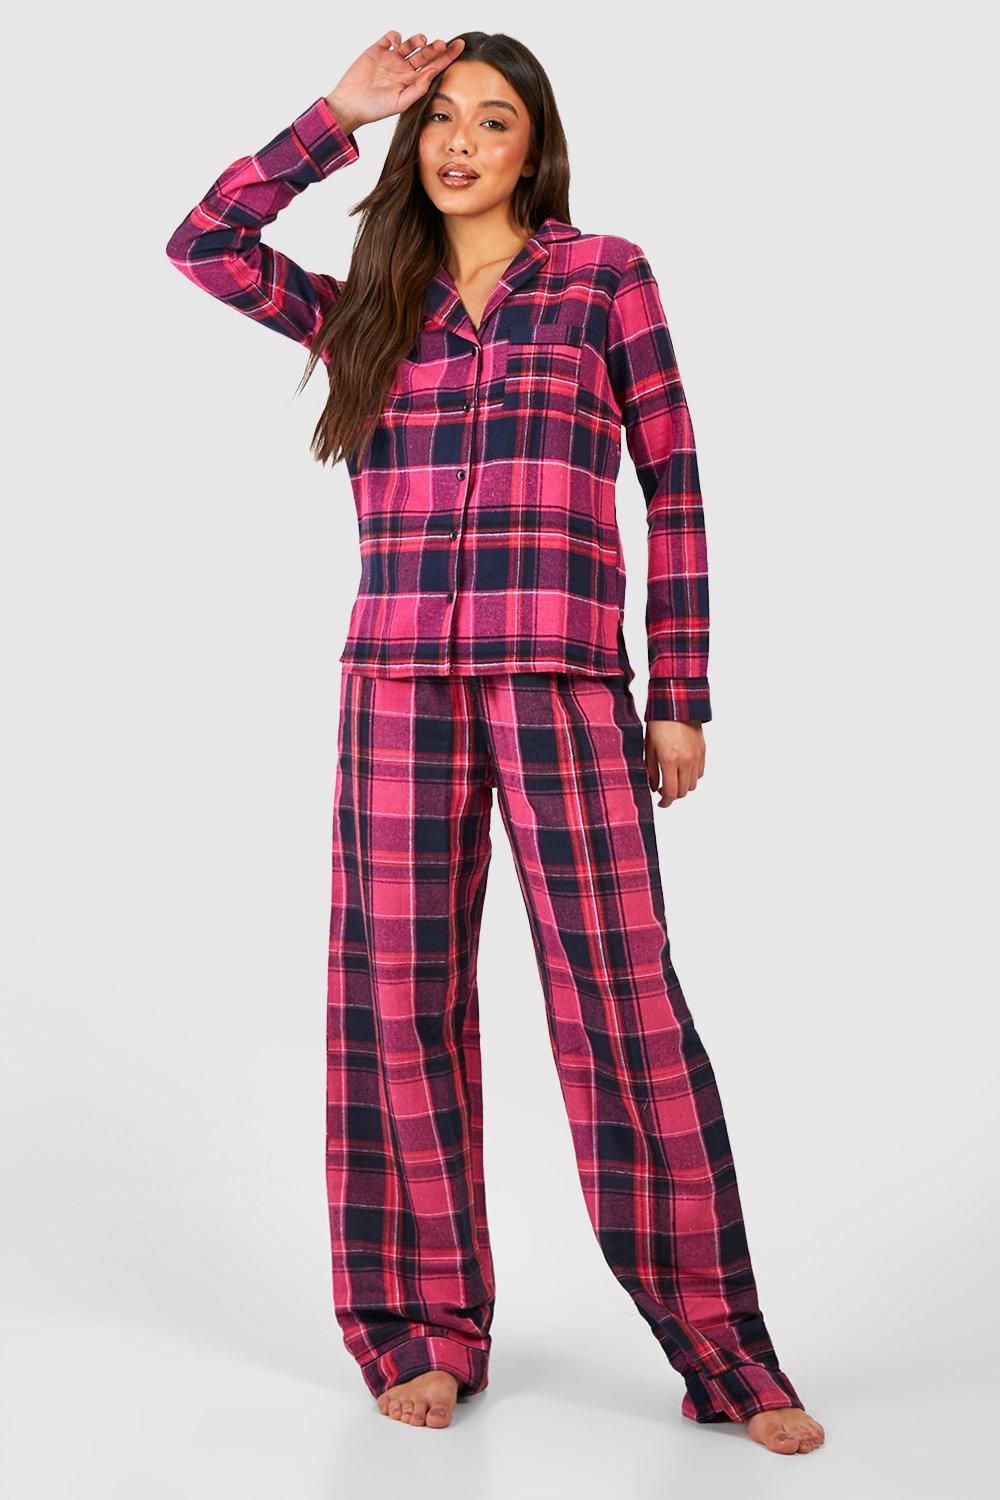 Pantalon Pijama Rosado Cuadros Mujer